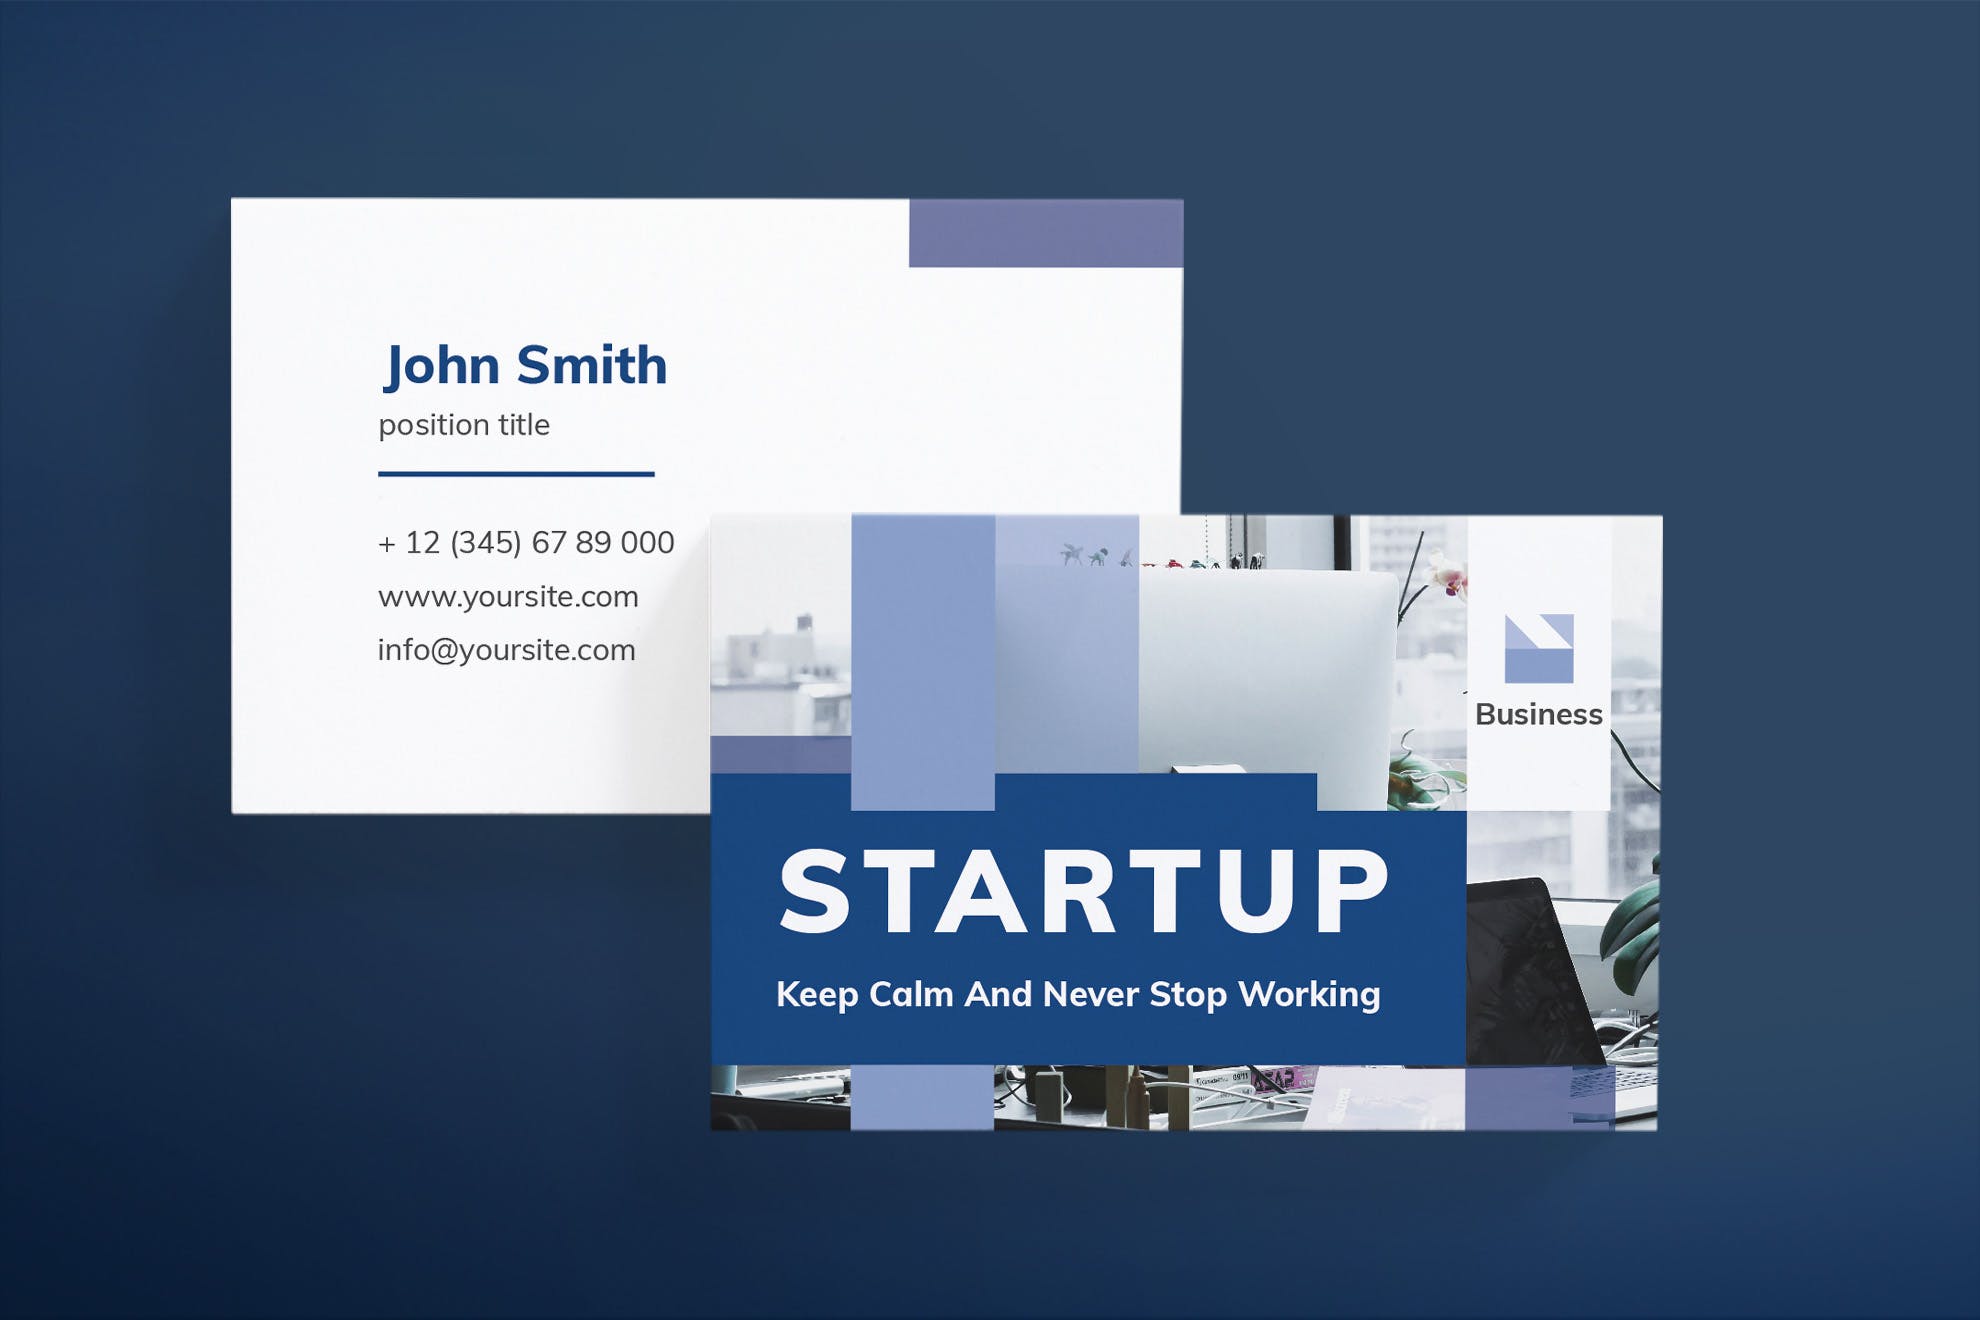 项目解决方案专家非凡图库精选名片模板 Startup Business Card插图(2)